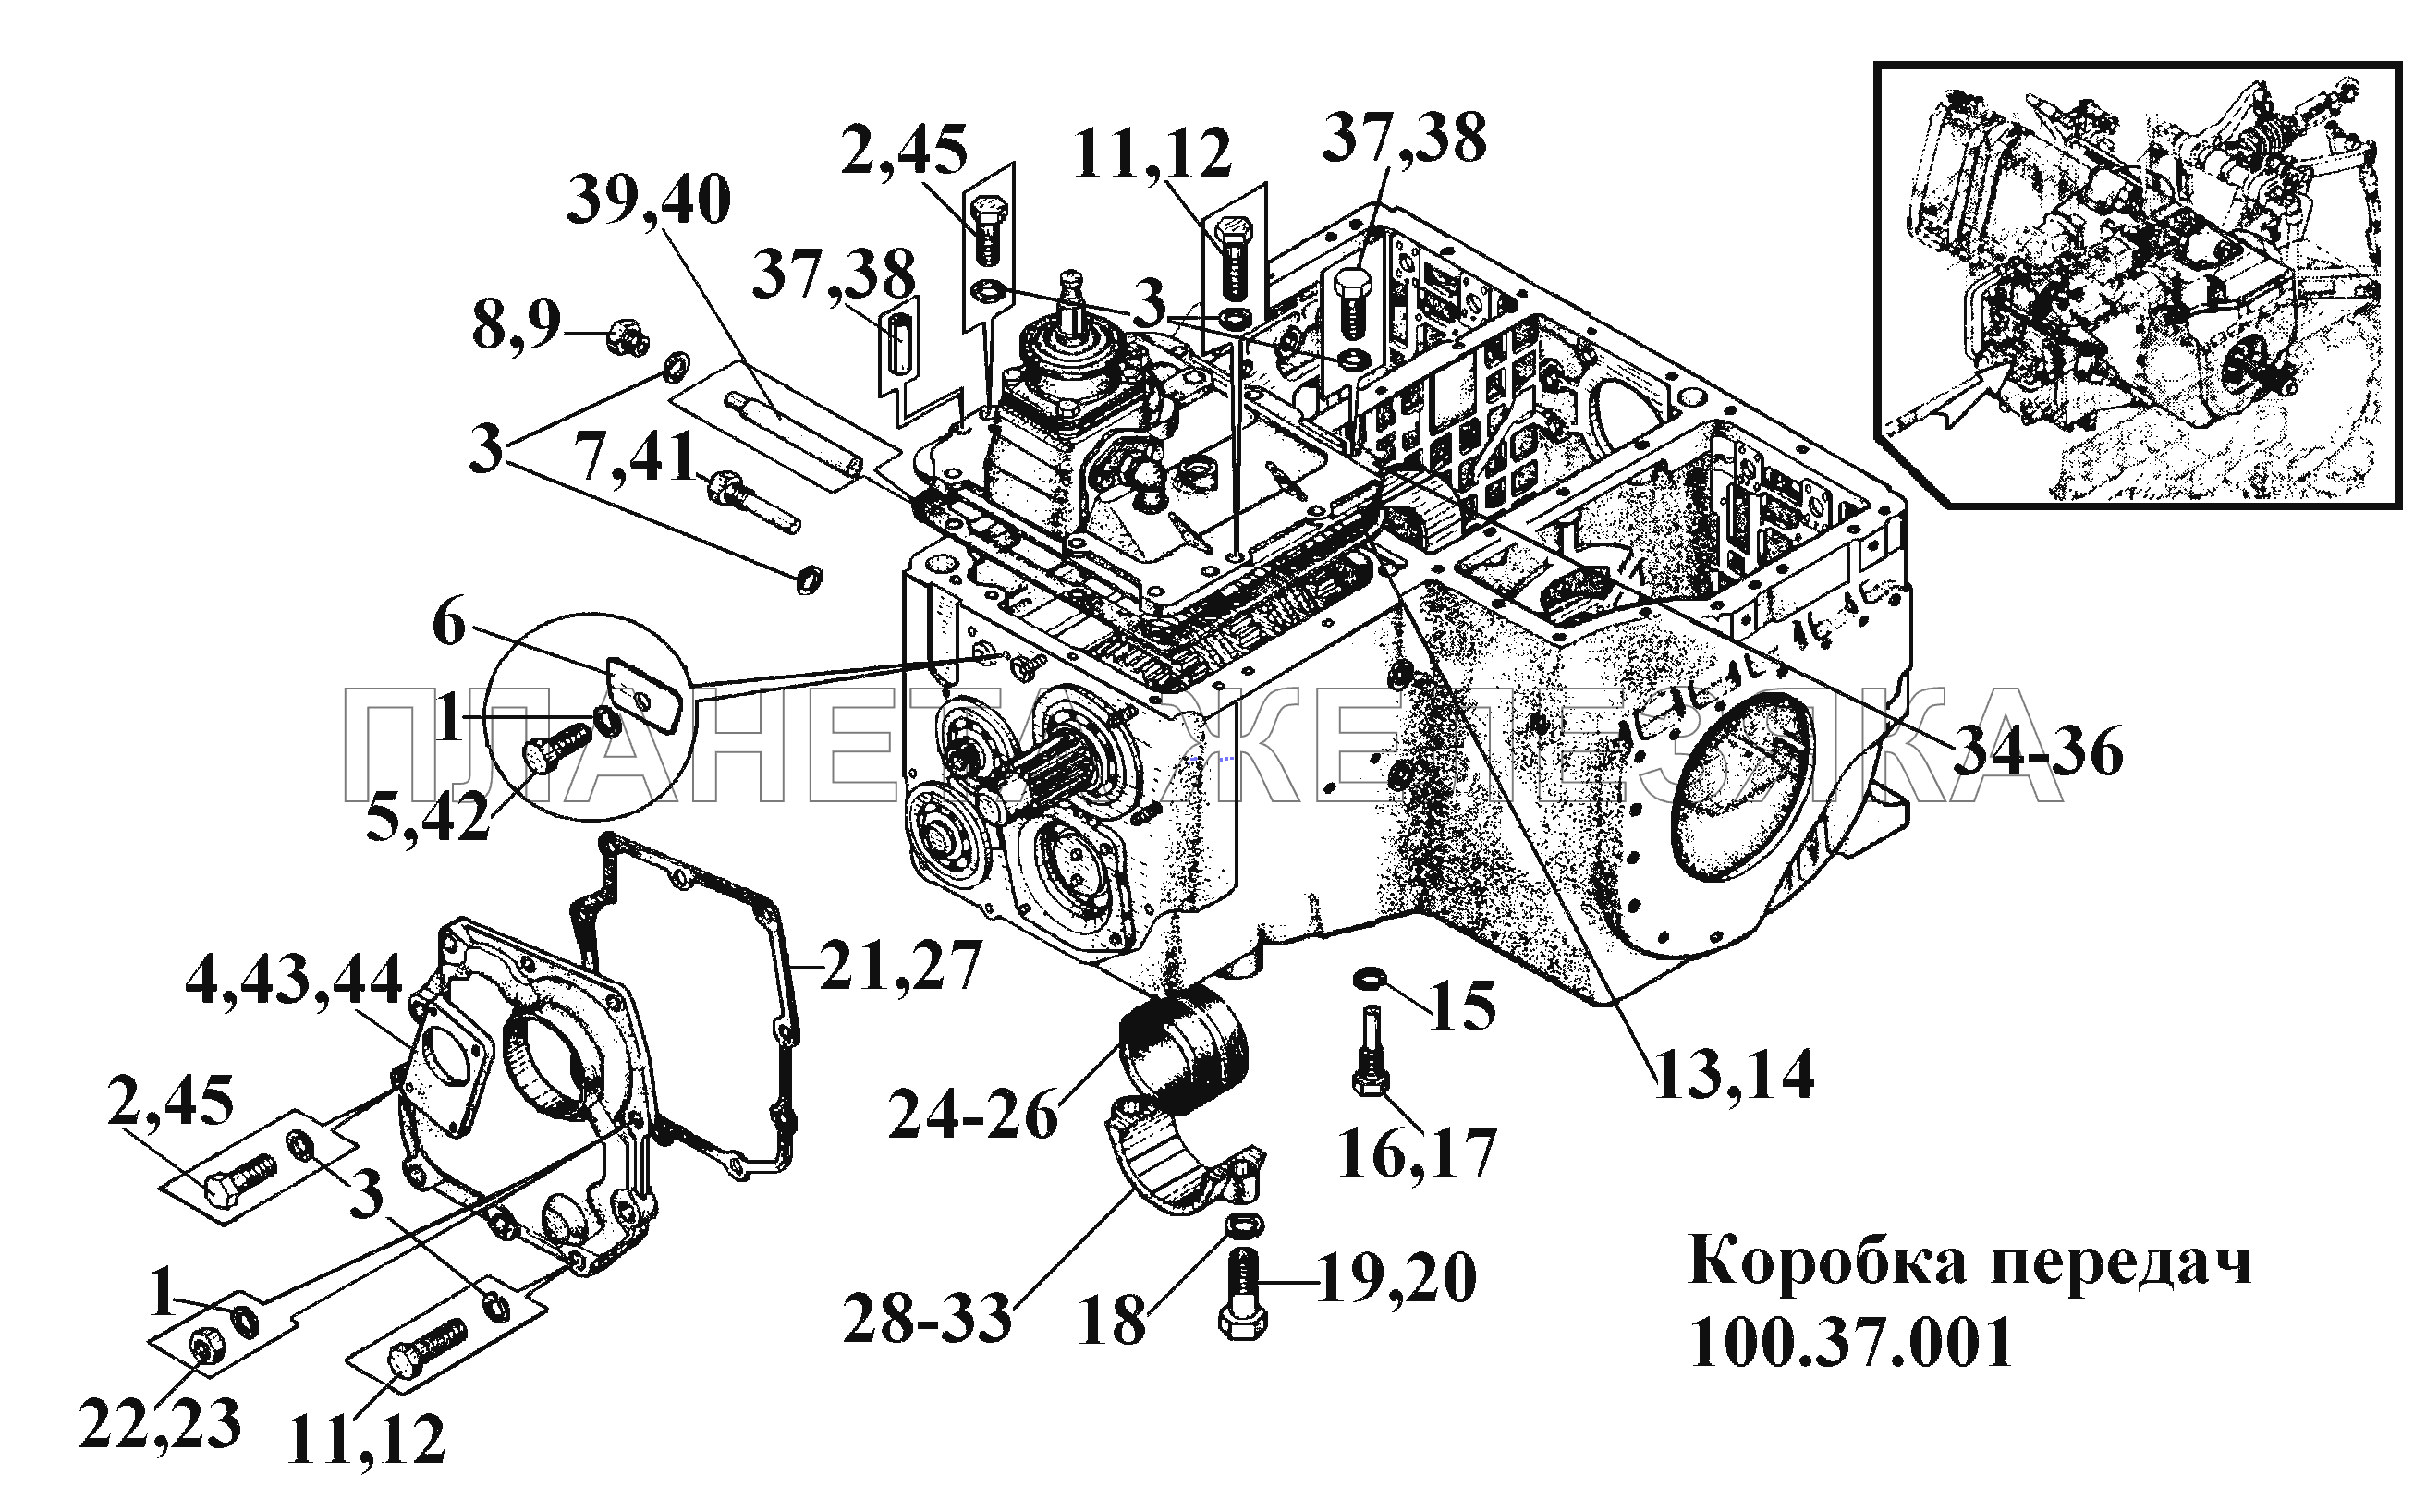 Коробка передач 100.37.001 (1) ВТ-100Д